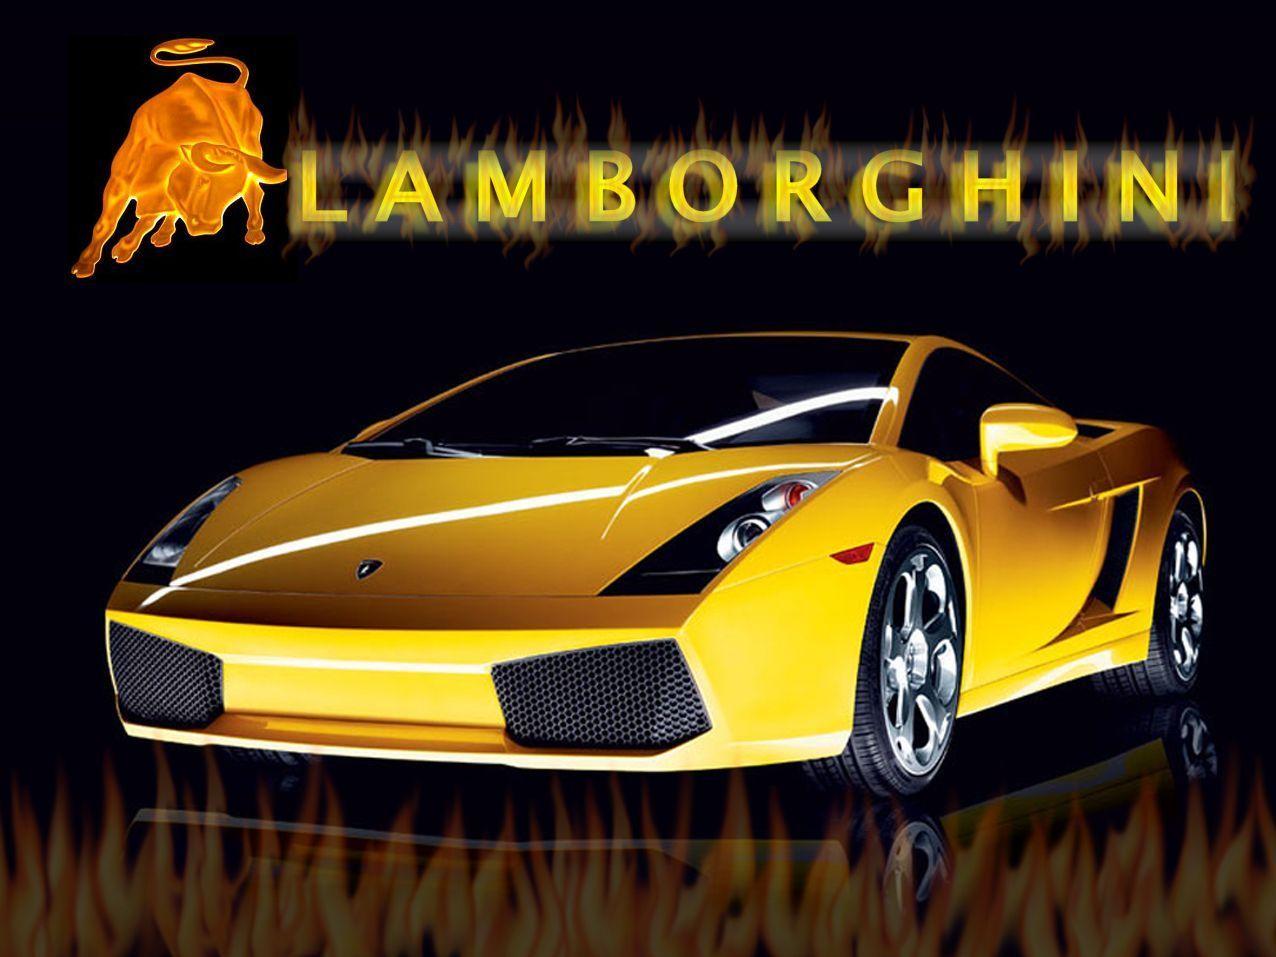 Cool Lamborghini Wallpapers - Wallpaper Cave